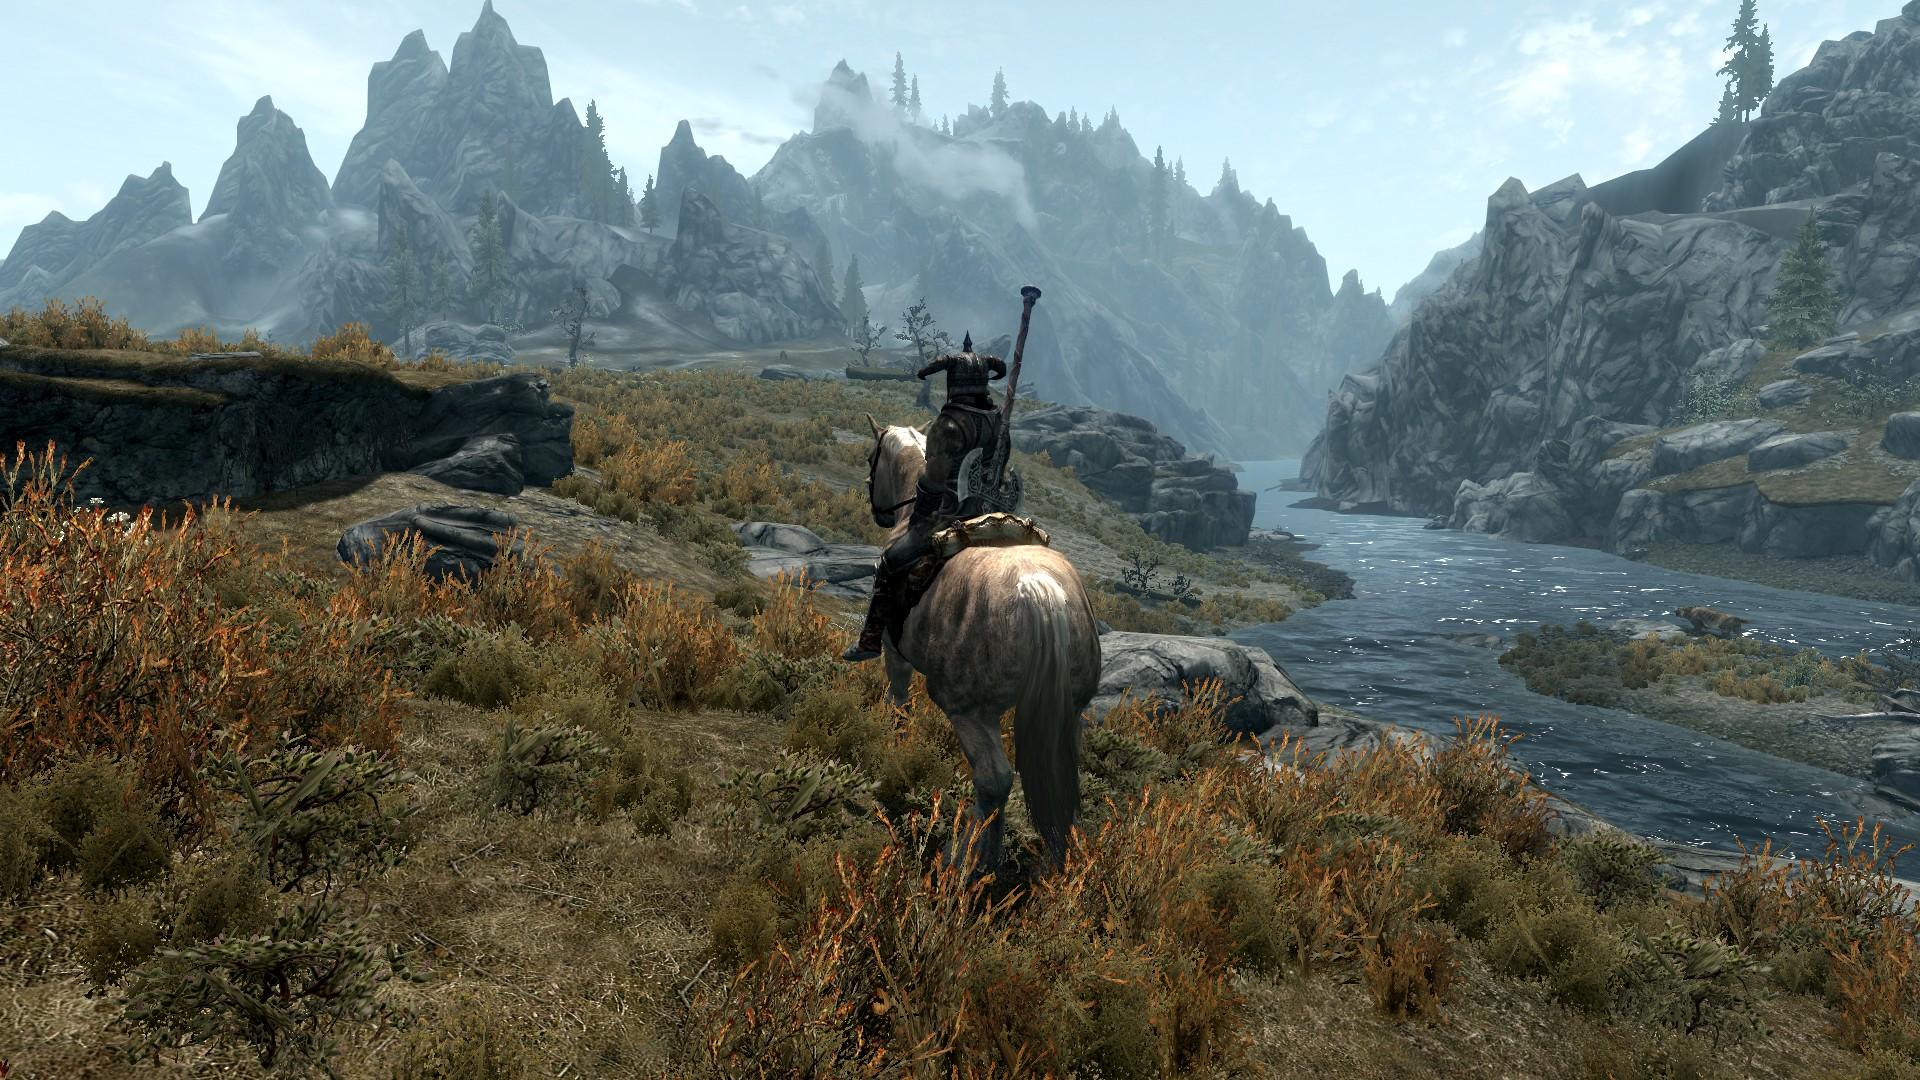 Главный герой на лошади, скриншот из игры The Elder Scrolls 5: Skyrim 1920x1080